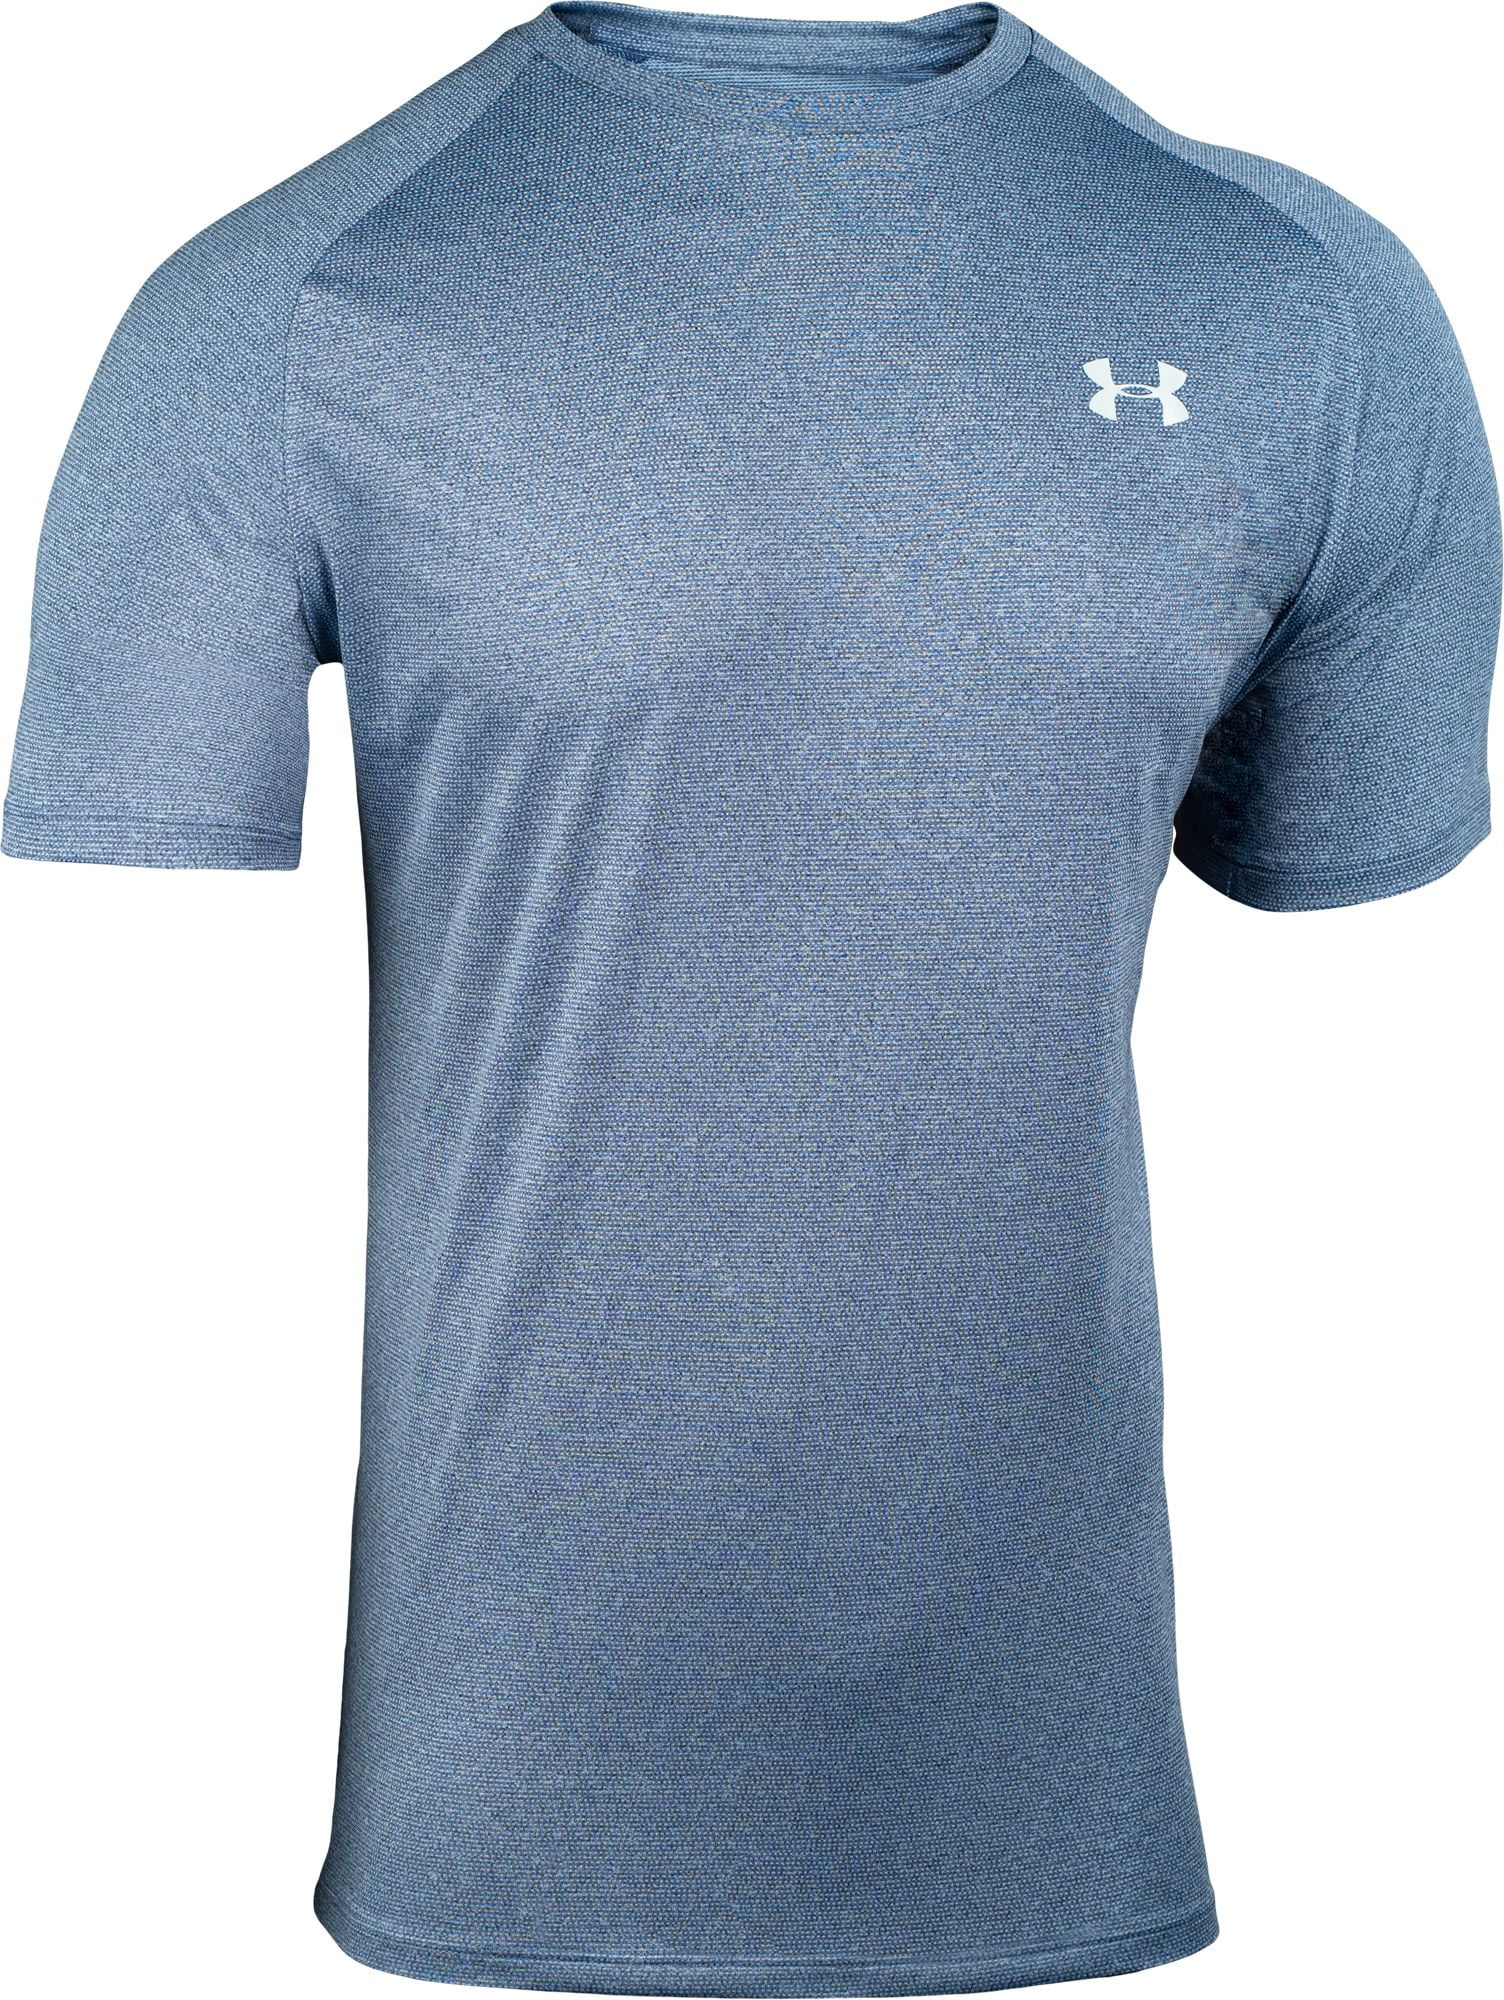 Under Armour - Tech 2.0 - T-shirt in lichtblauw